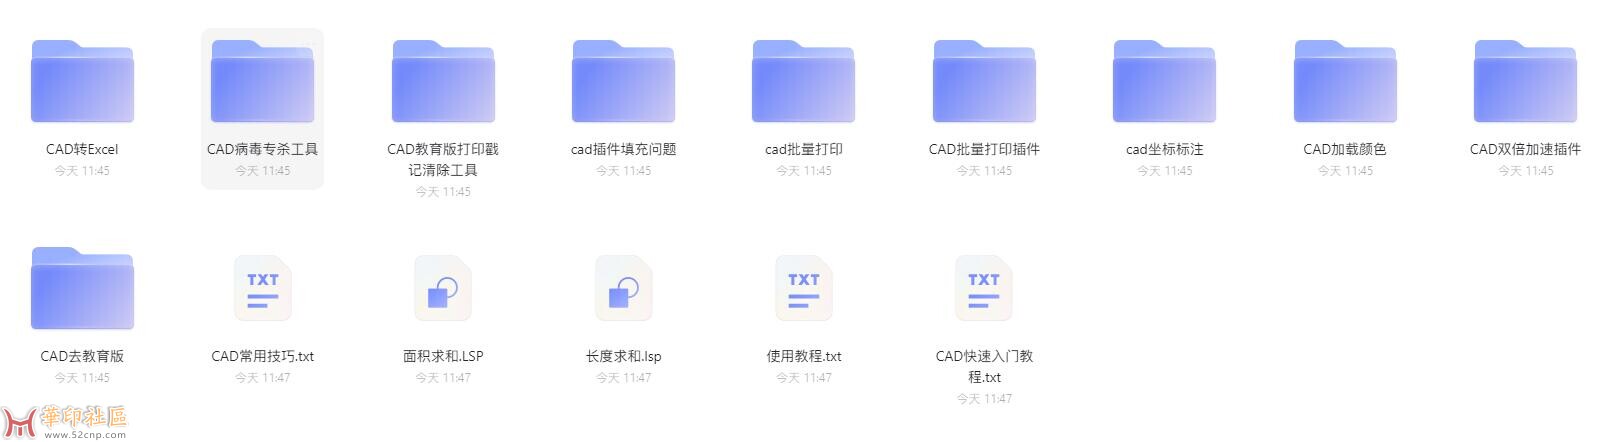 CAD插件集合发布多达60多款{tag}(2)